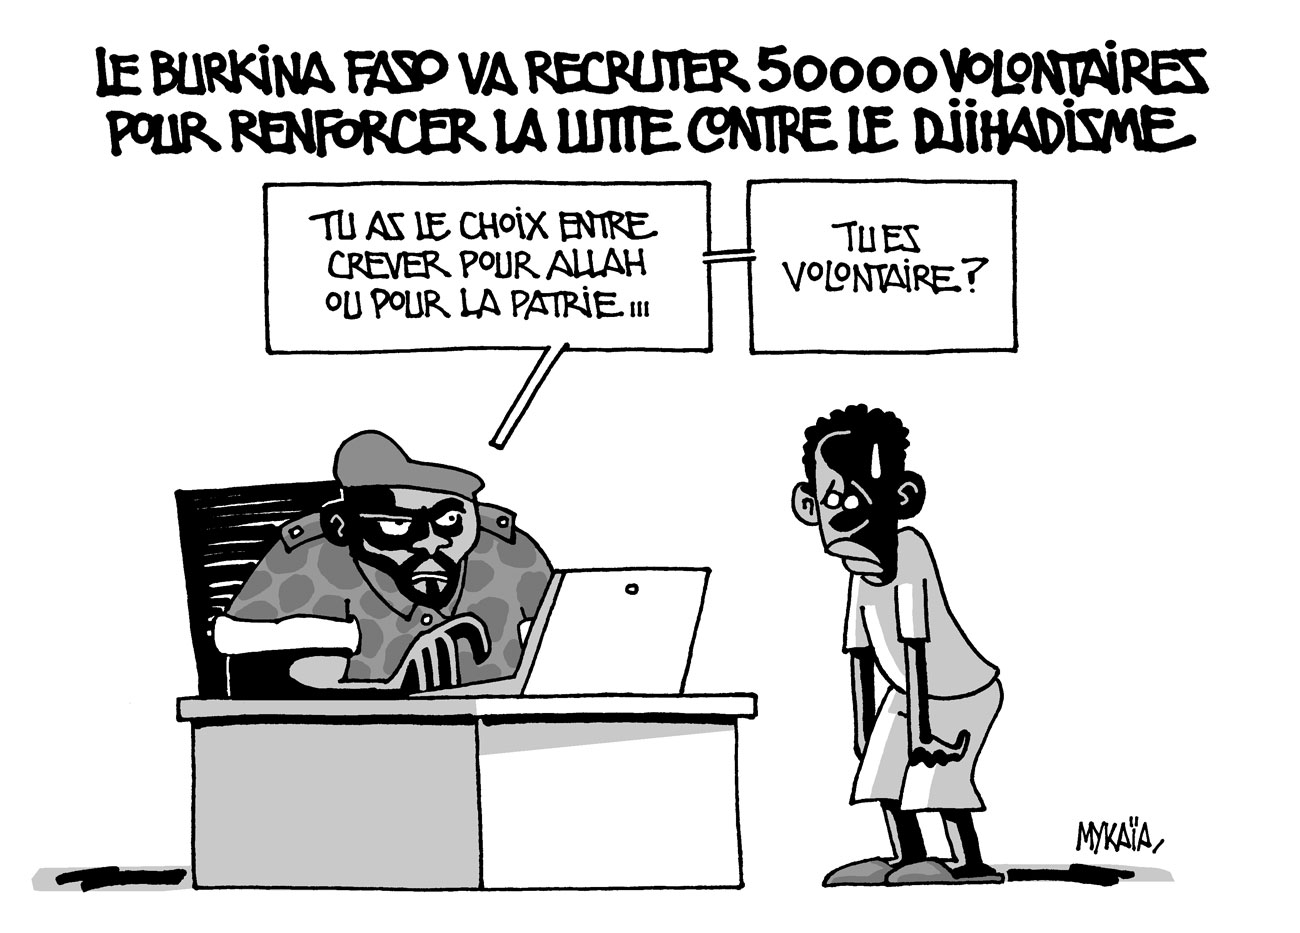 Le Burkina Faso va recruter 50 000 volontaires pour renforcer la lutte contre le djihadisme